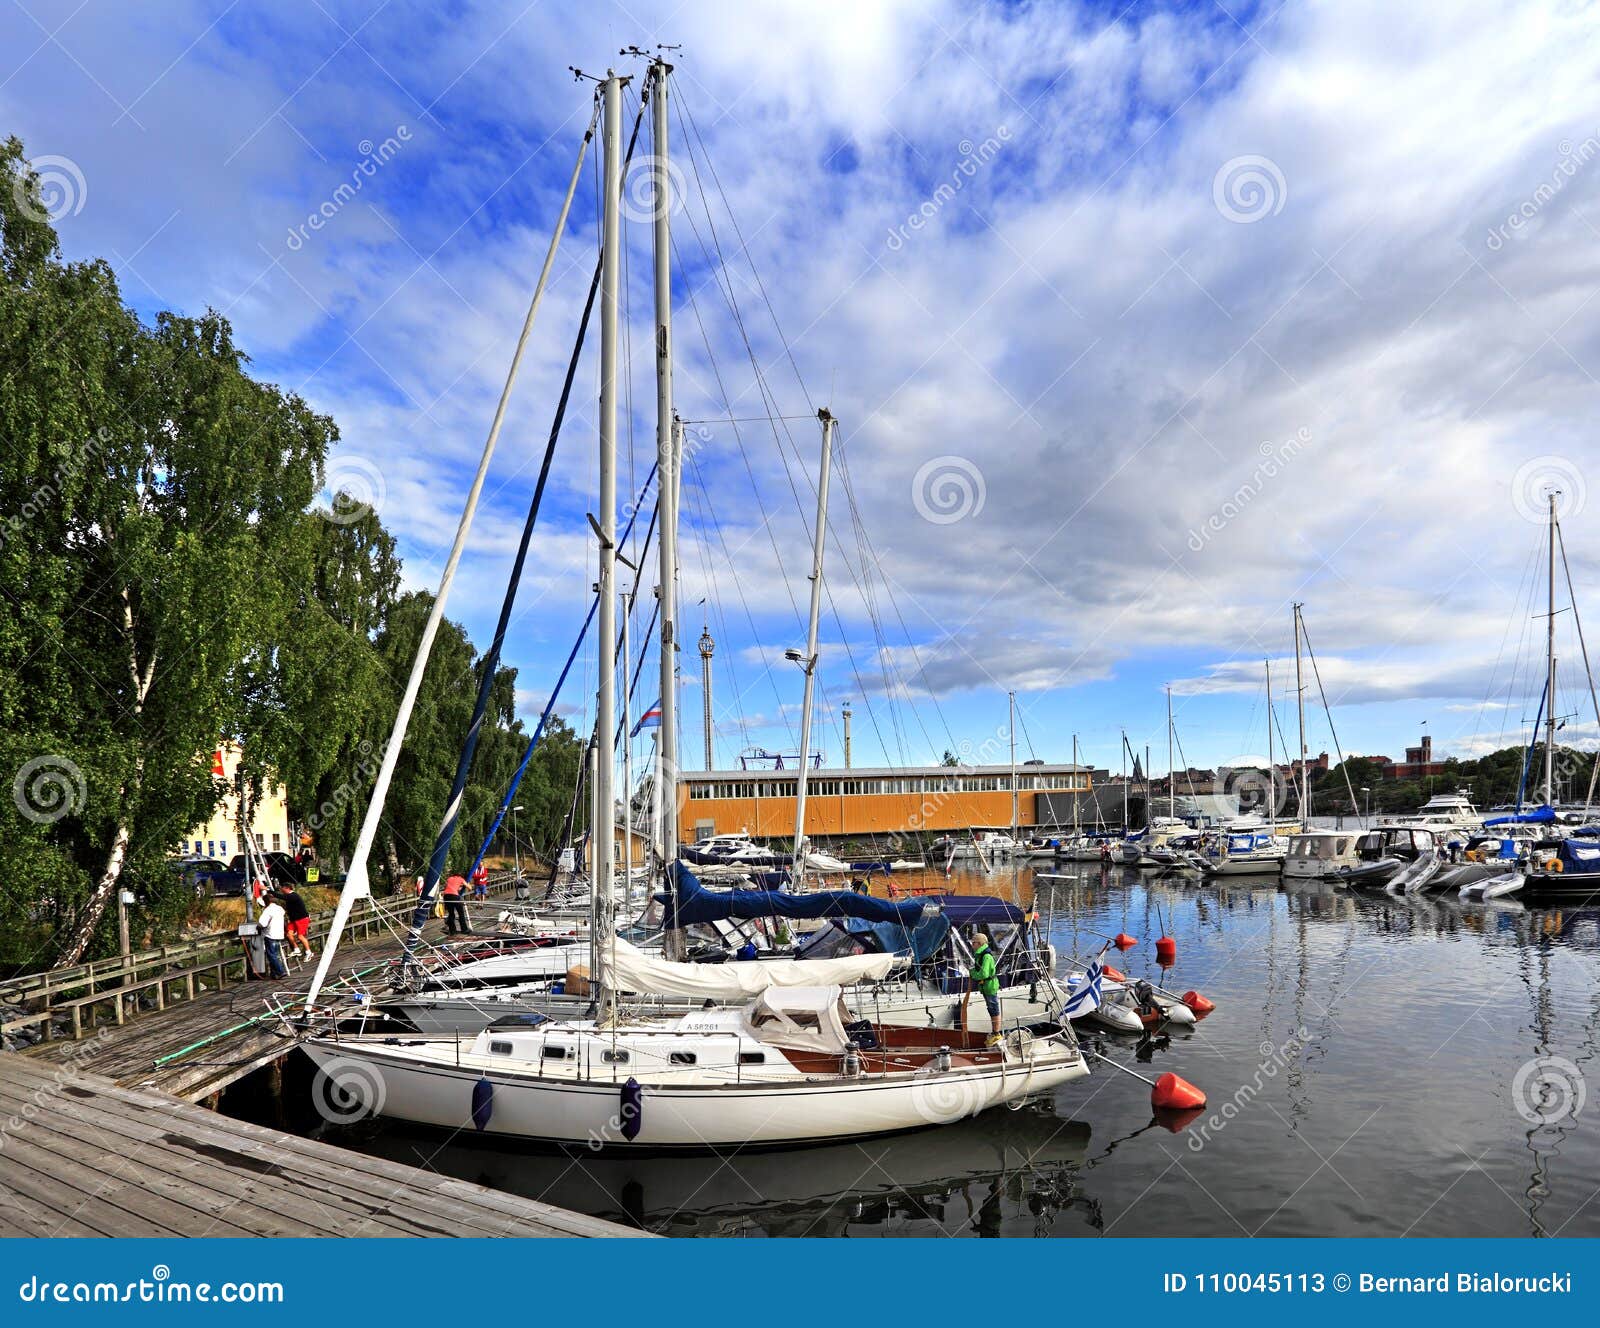 stockholm, sweden - boats docking by the djurgarden island